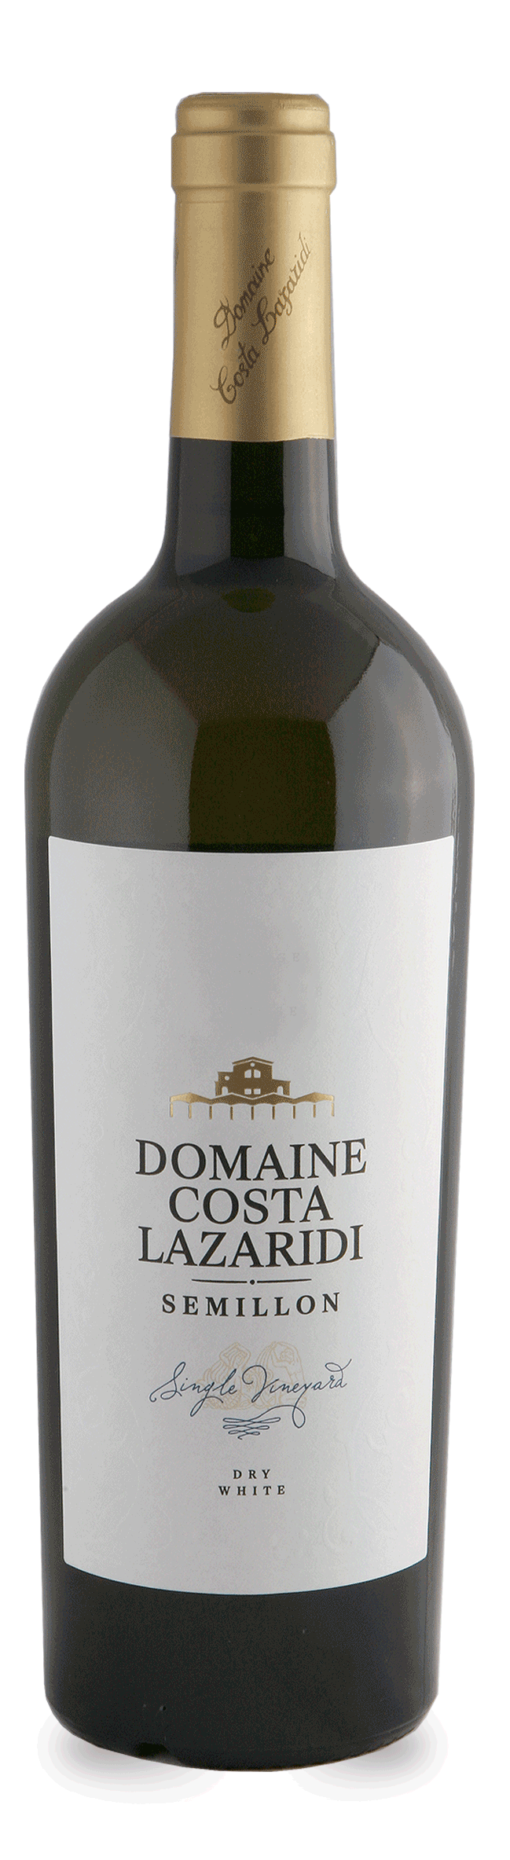 Οίνος Λευκός Semillon Domaine Costa Lazaridi (750 ml)